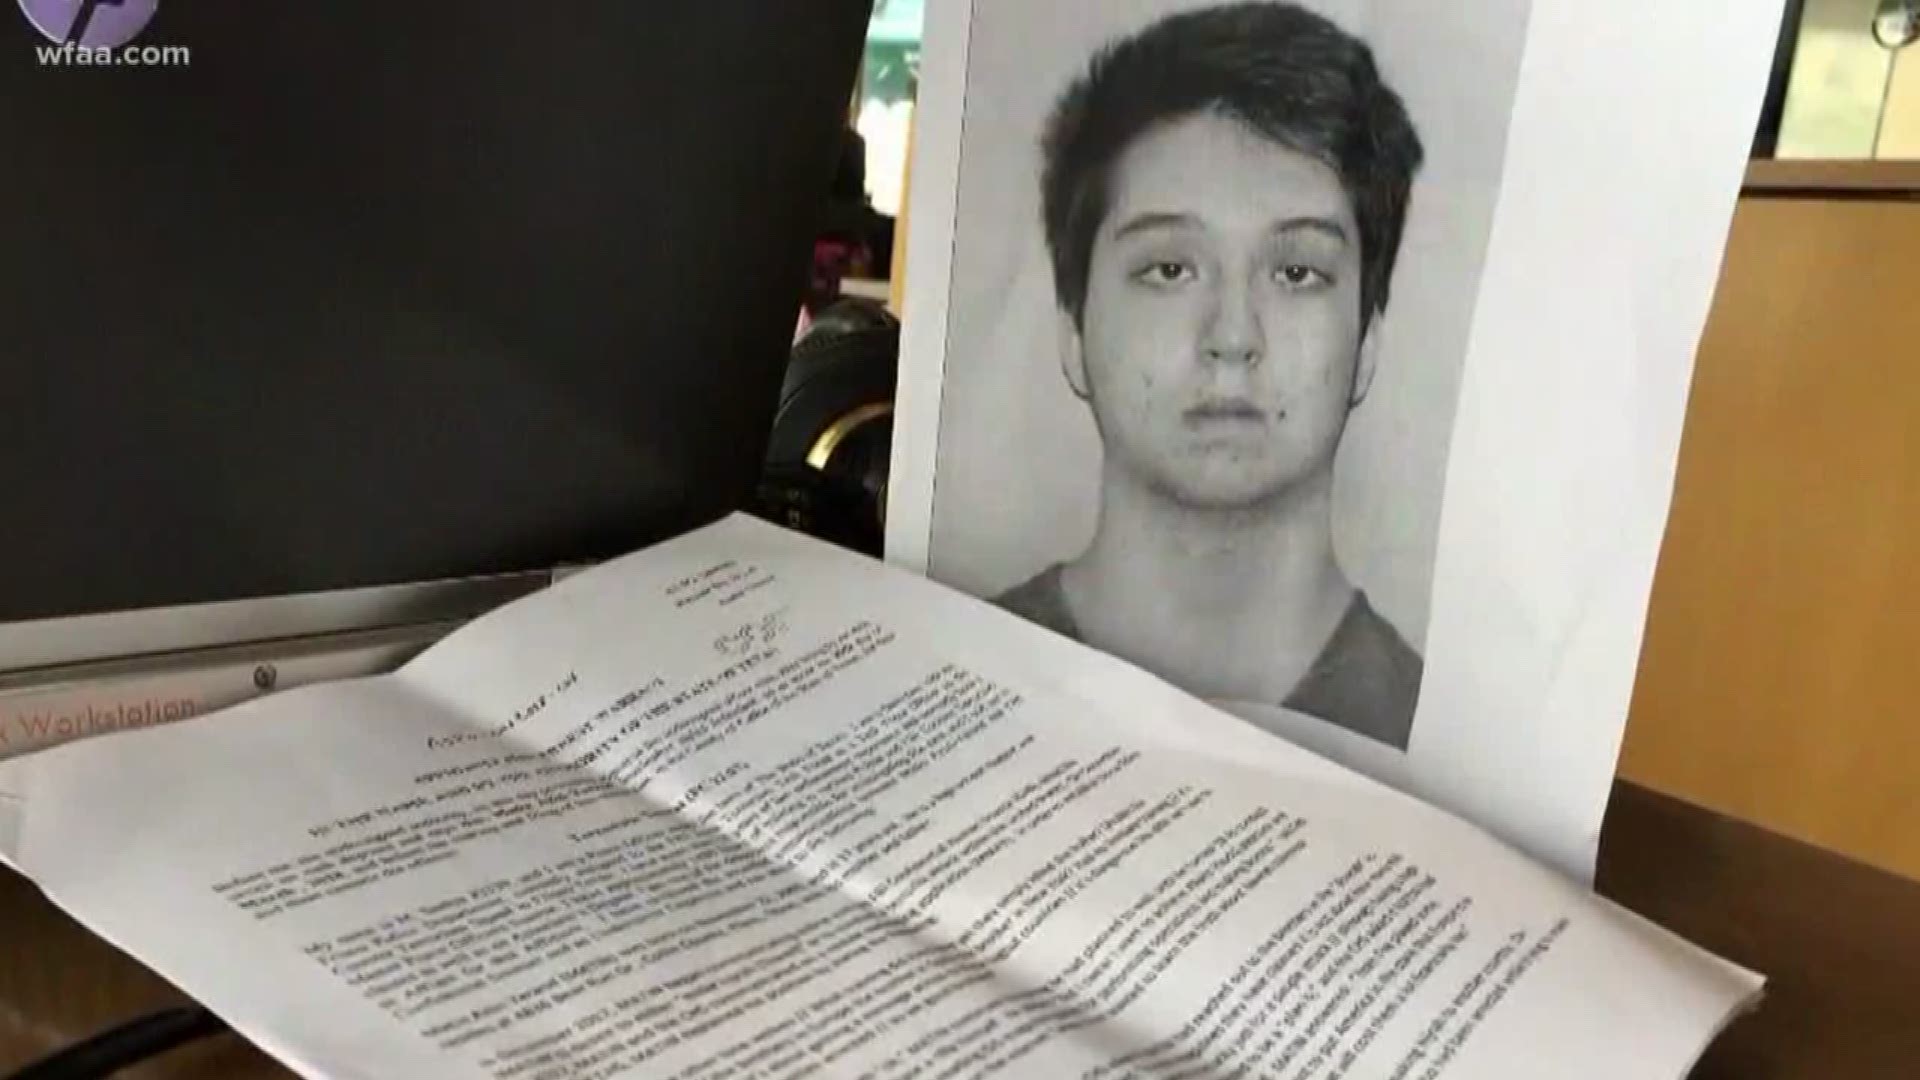 FBI questions students after teen's arrest